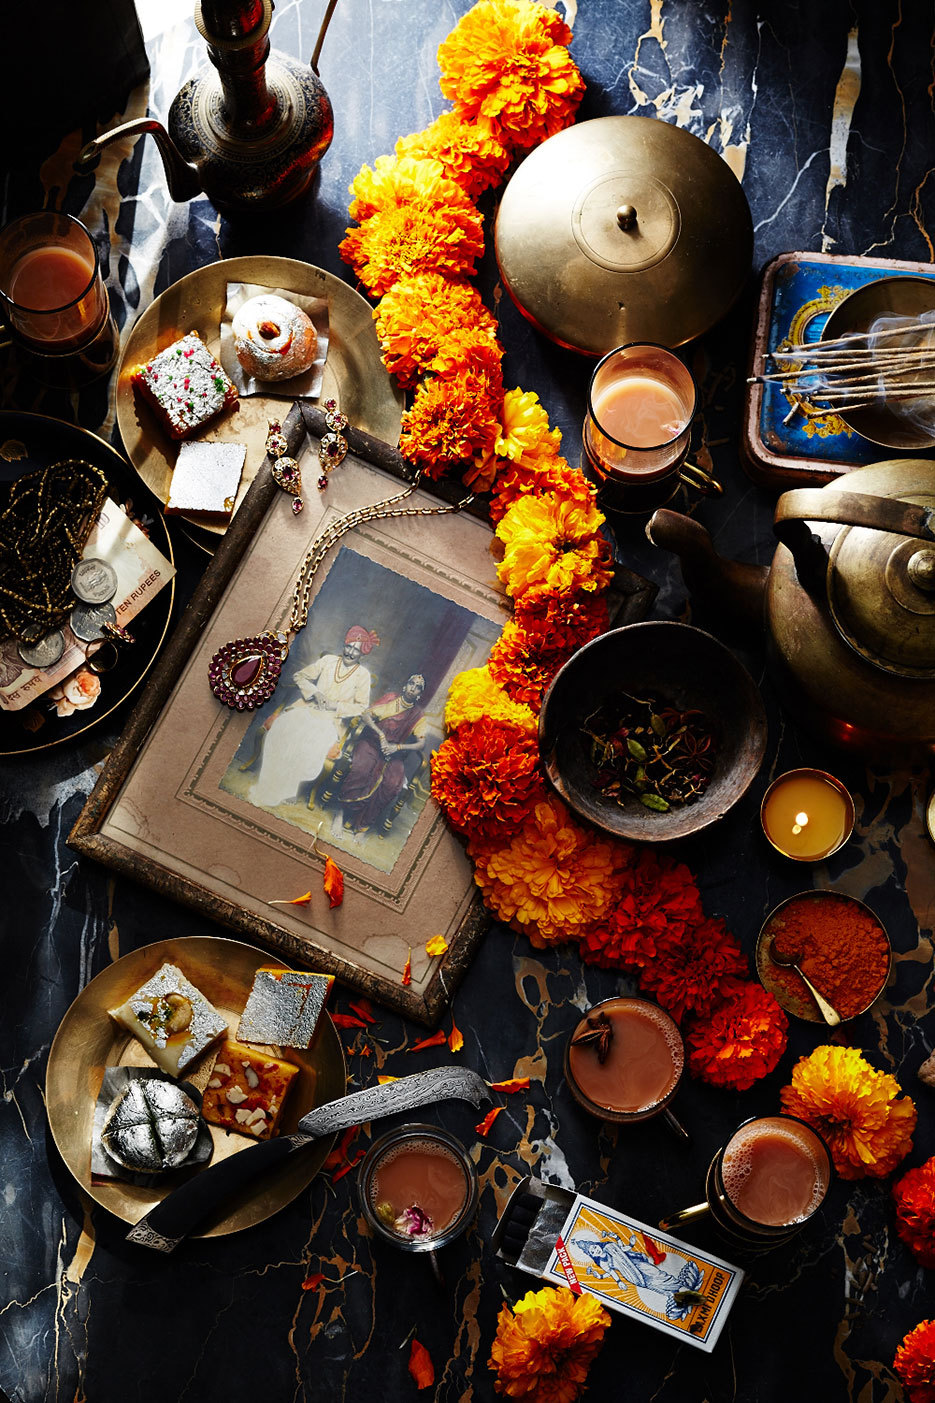 vacilandoelmundo:This Tea Rituals Around the World slideshow at Condé Nast Traveler